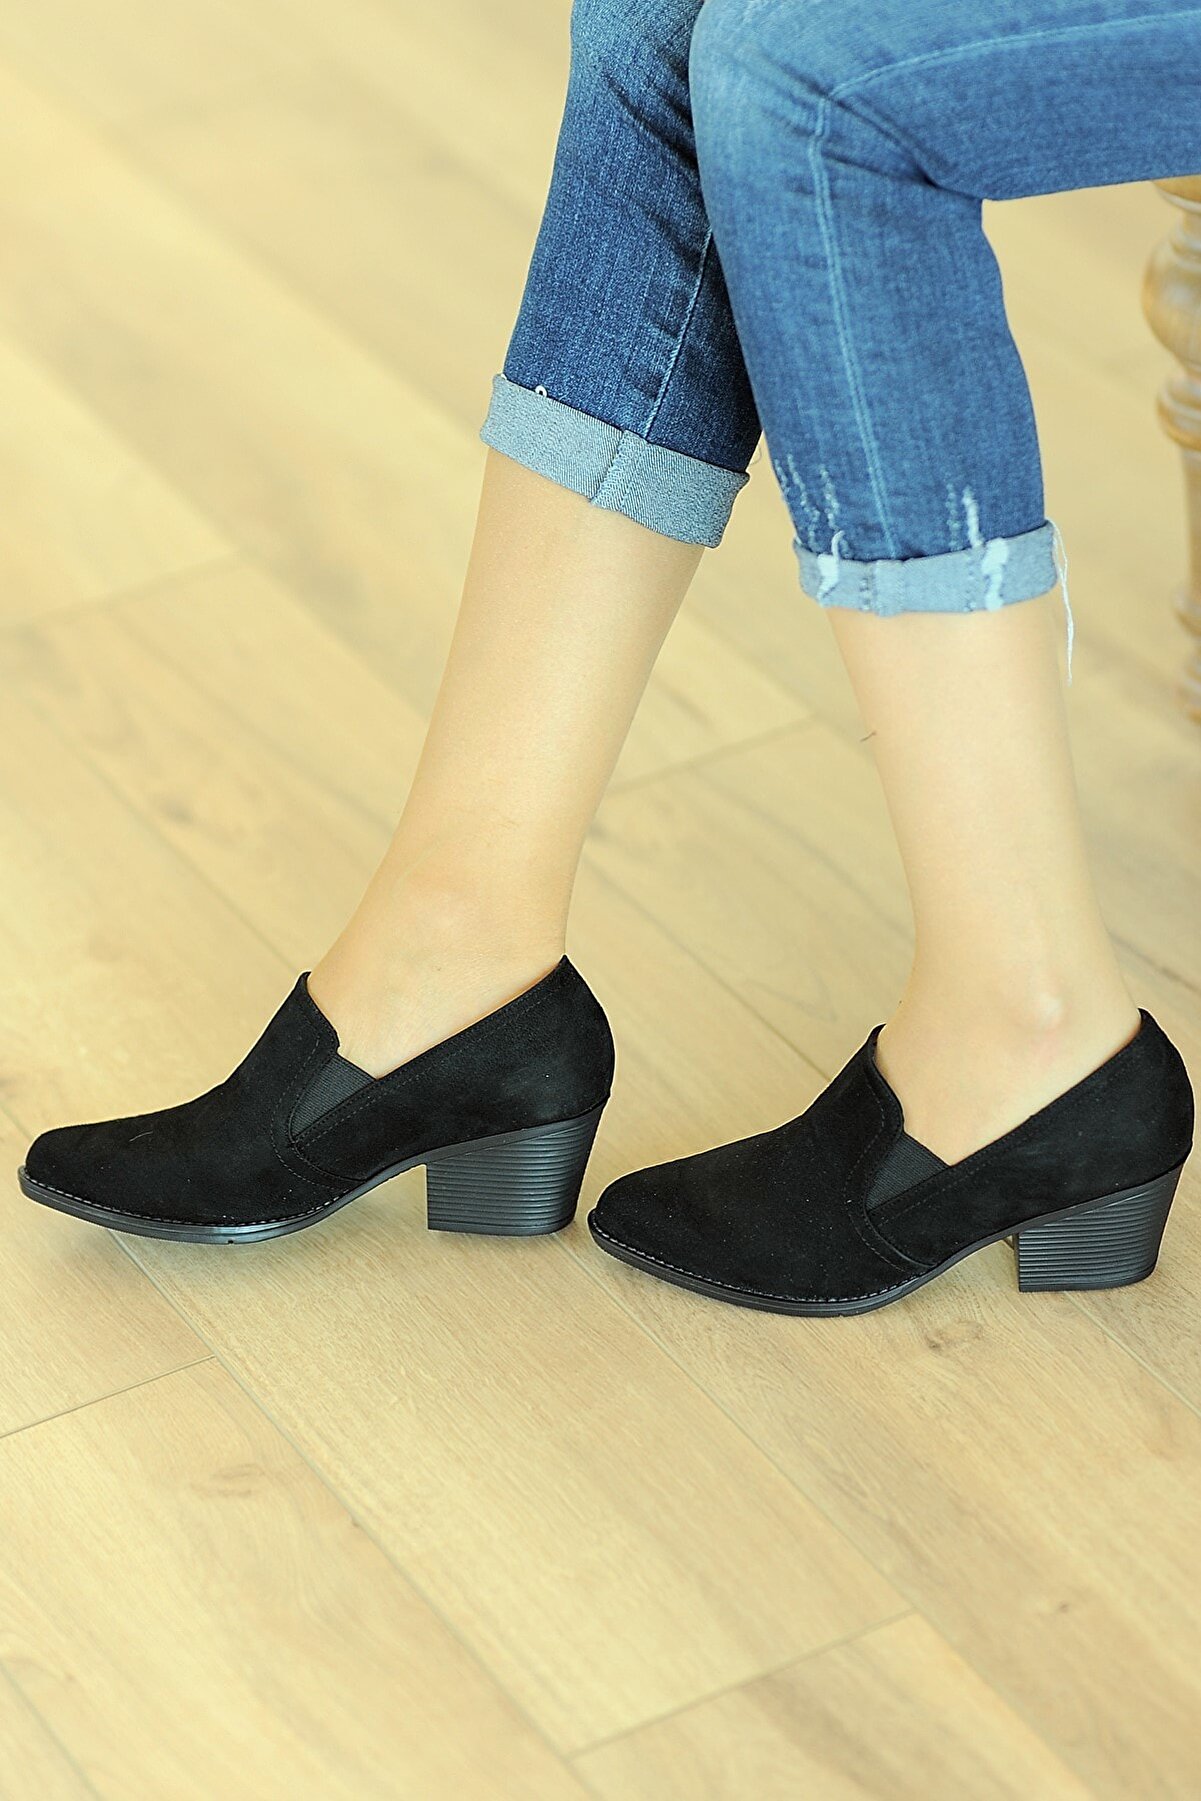 Pembe Potin Siyah Süet Kadın Klasik Topuklu Ayakkabı A5012-19